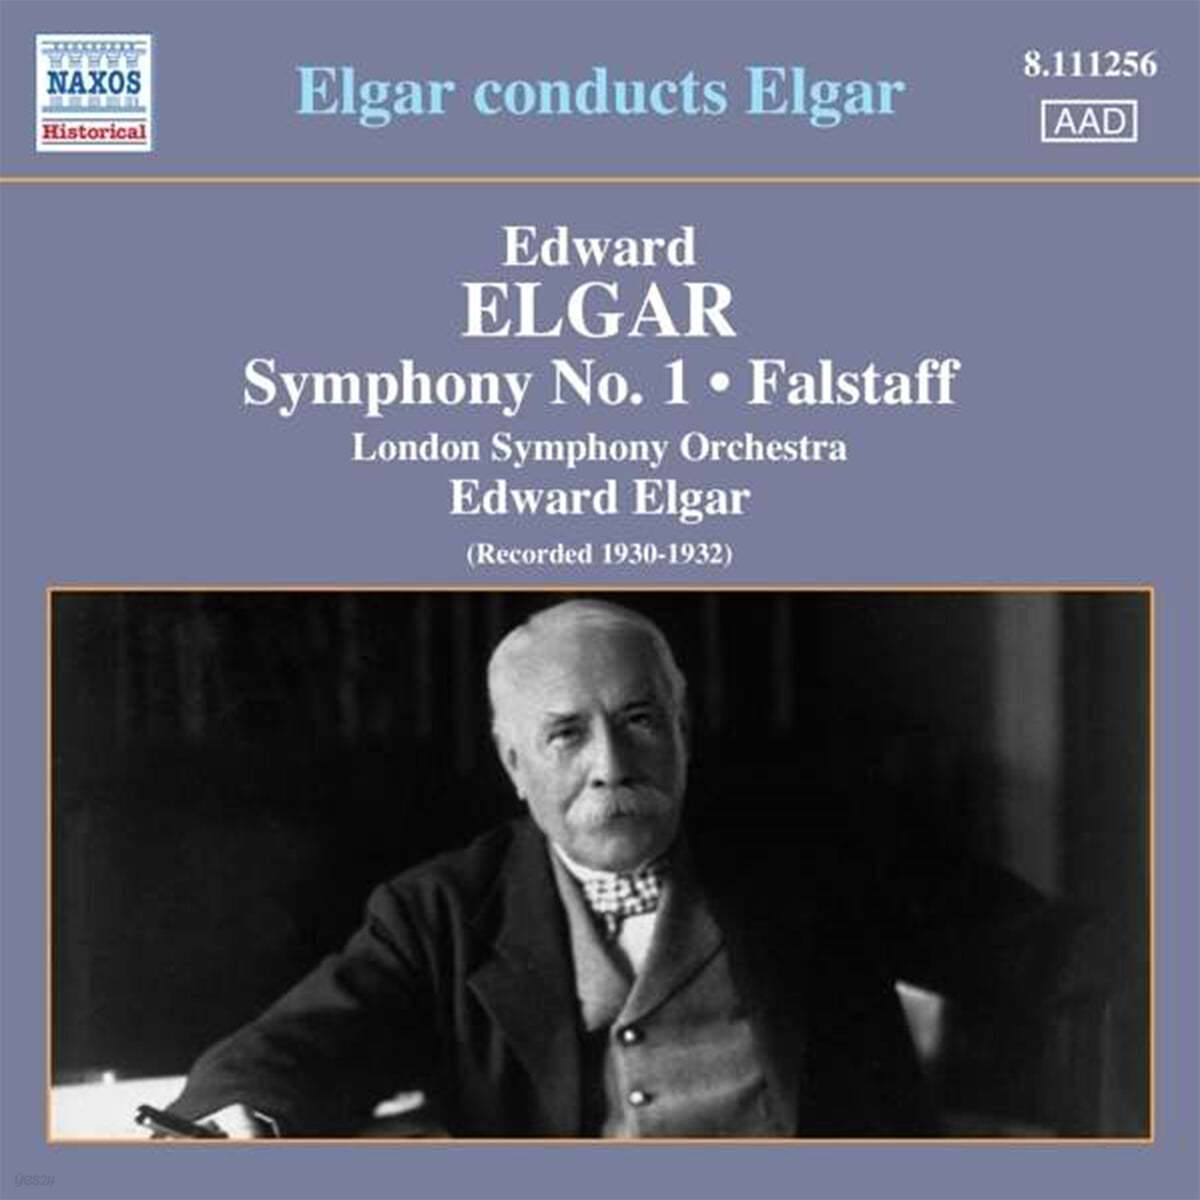 London Symphony 엘가: 교향곡 1번, 팔스타프 (1930-1932년 녹음) (Elgar: Symphony No.1, Falstaff) 